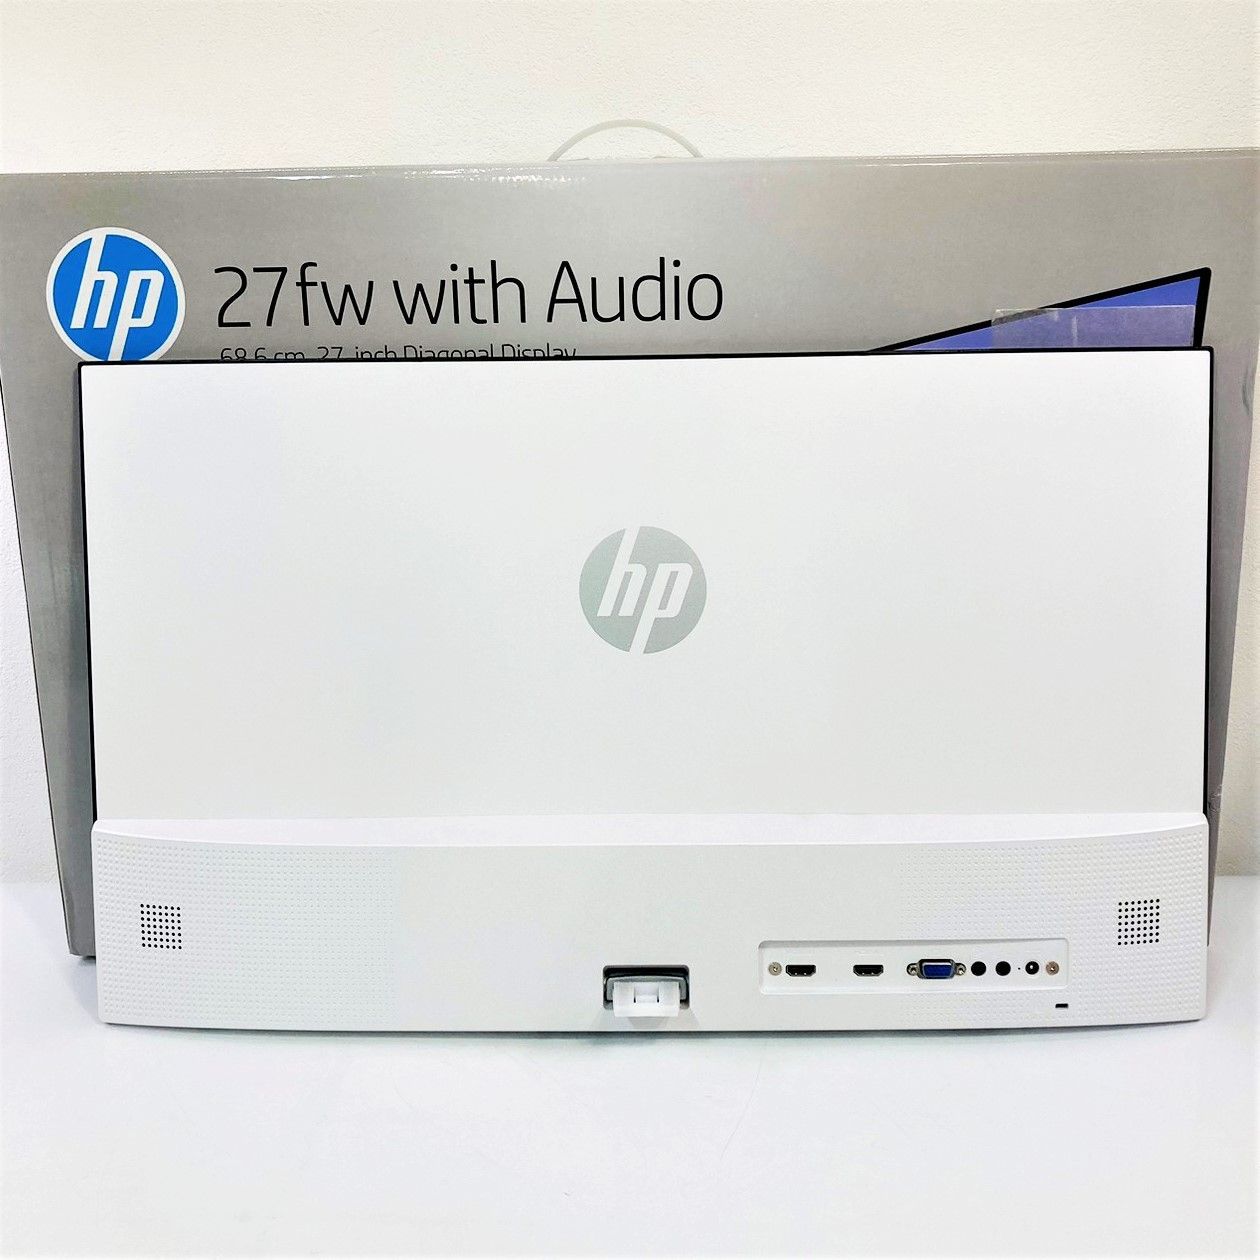 動作OK】HP 27fw Display With Audio モニター ディスプレイ 27 型 